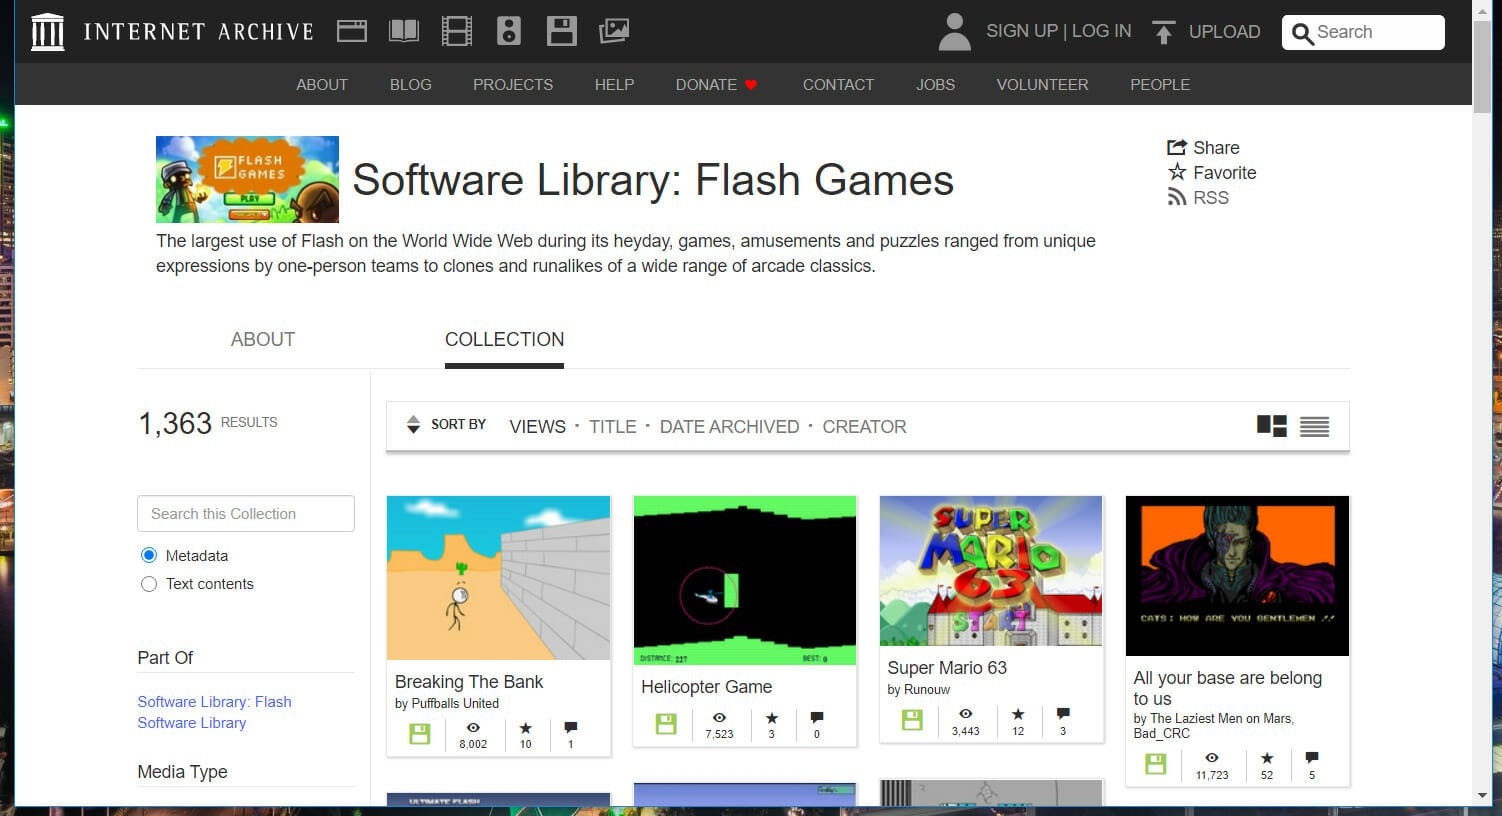 Sitio de Internet Archive cómo jugar juegos Adobe Flash sin Adobe Flash